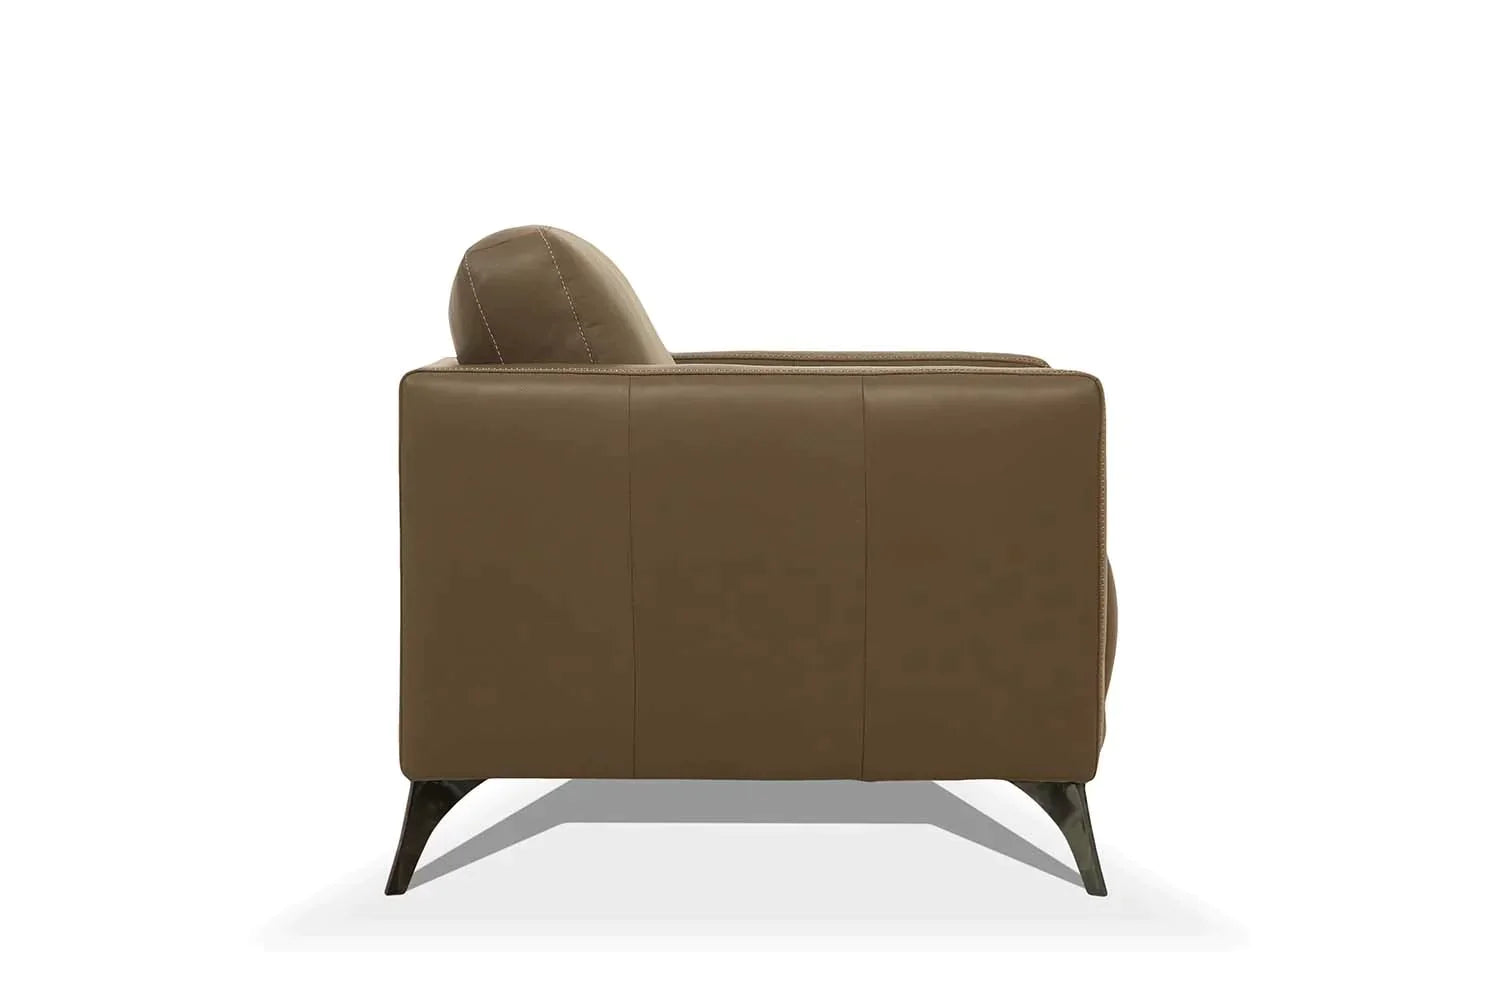 Malaga Taupe Leather Sofa Model 55000 By ACME Furniture